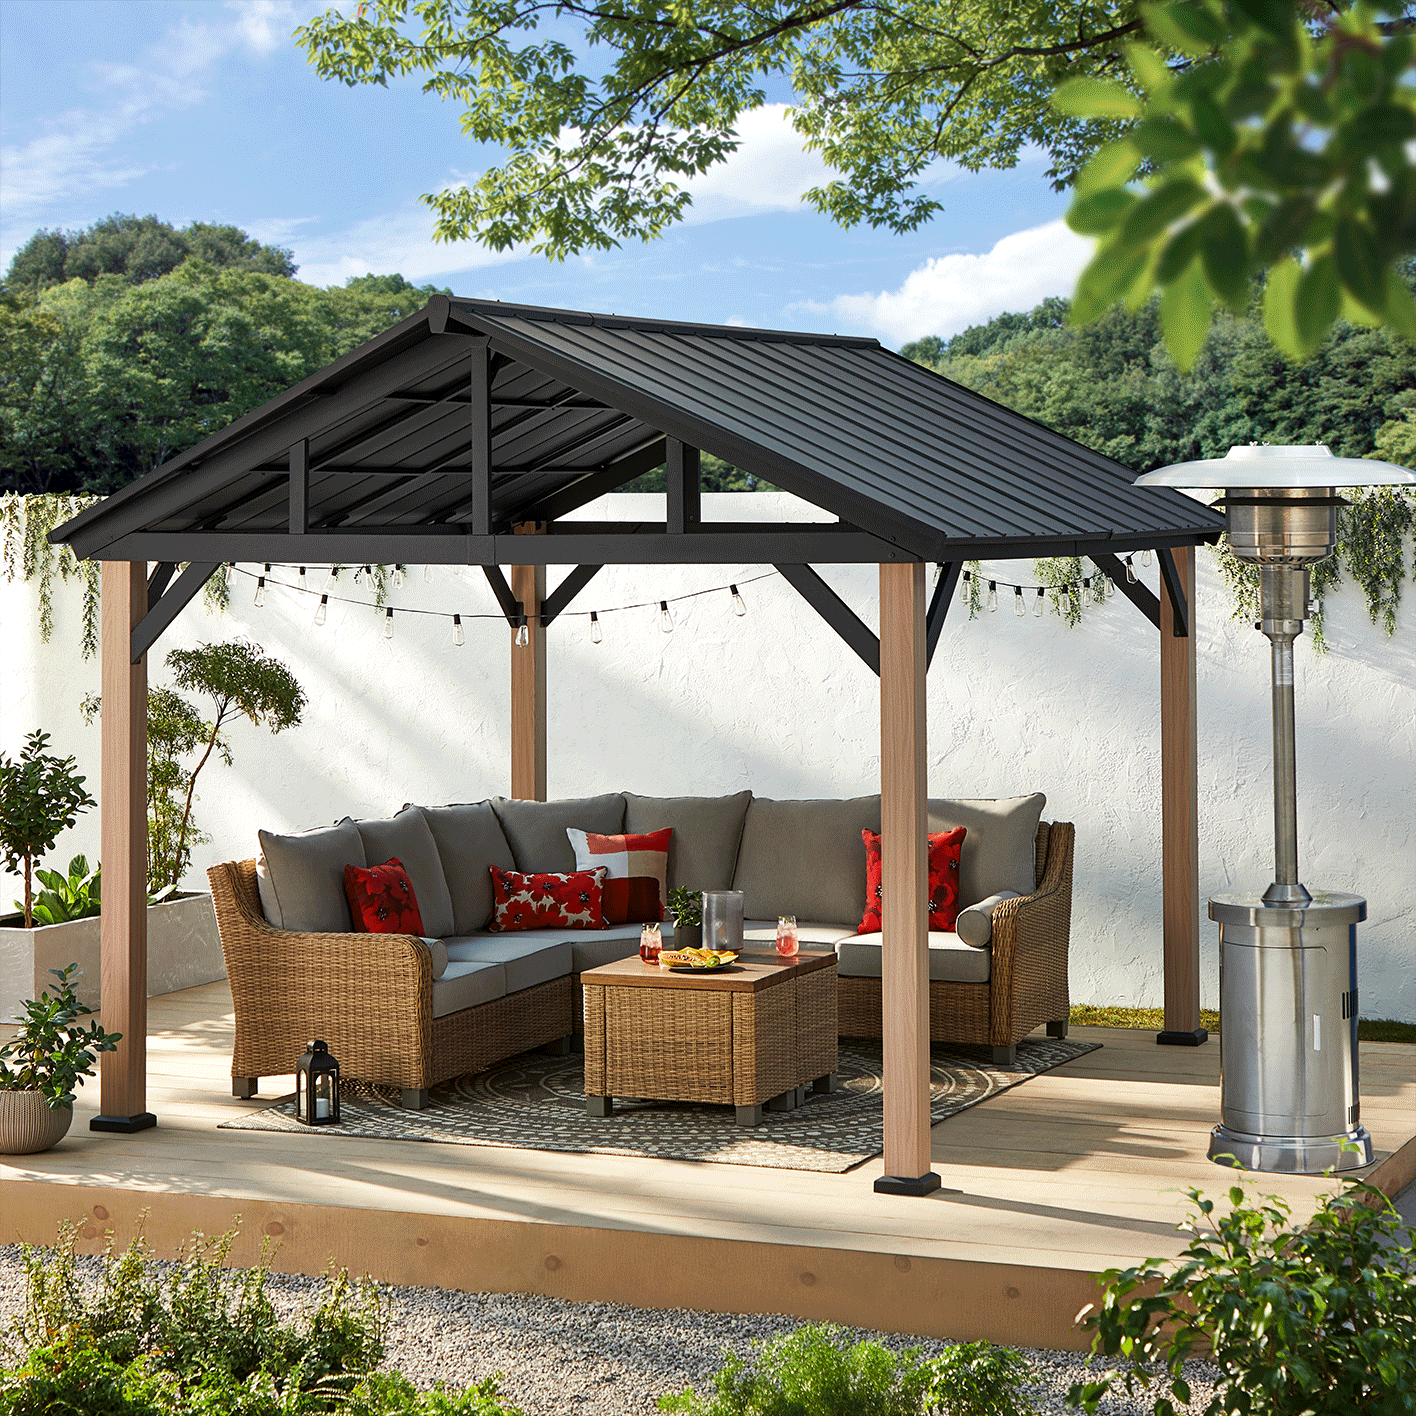 Abri de jardin CANVAS Homestead sur une terrasse en bois avec radiateur extérieur et ensemble modulaire.